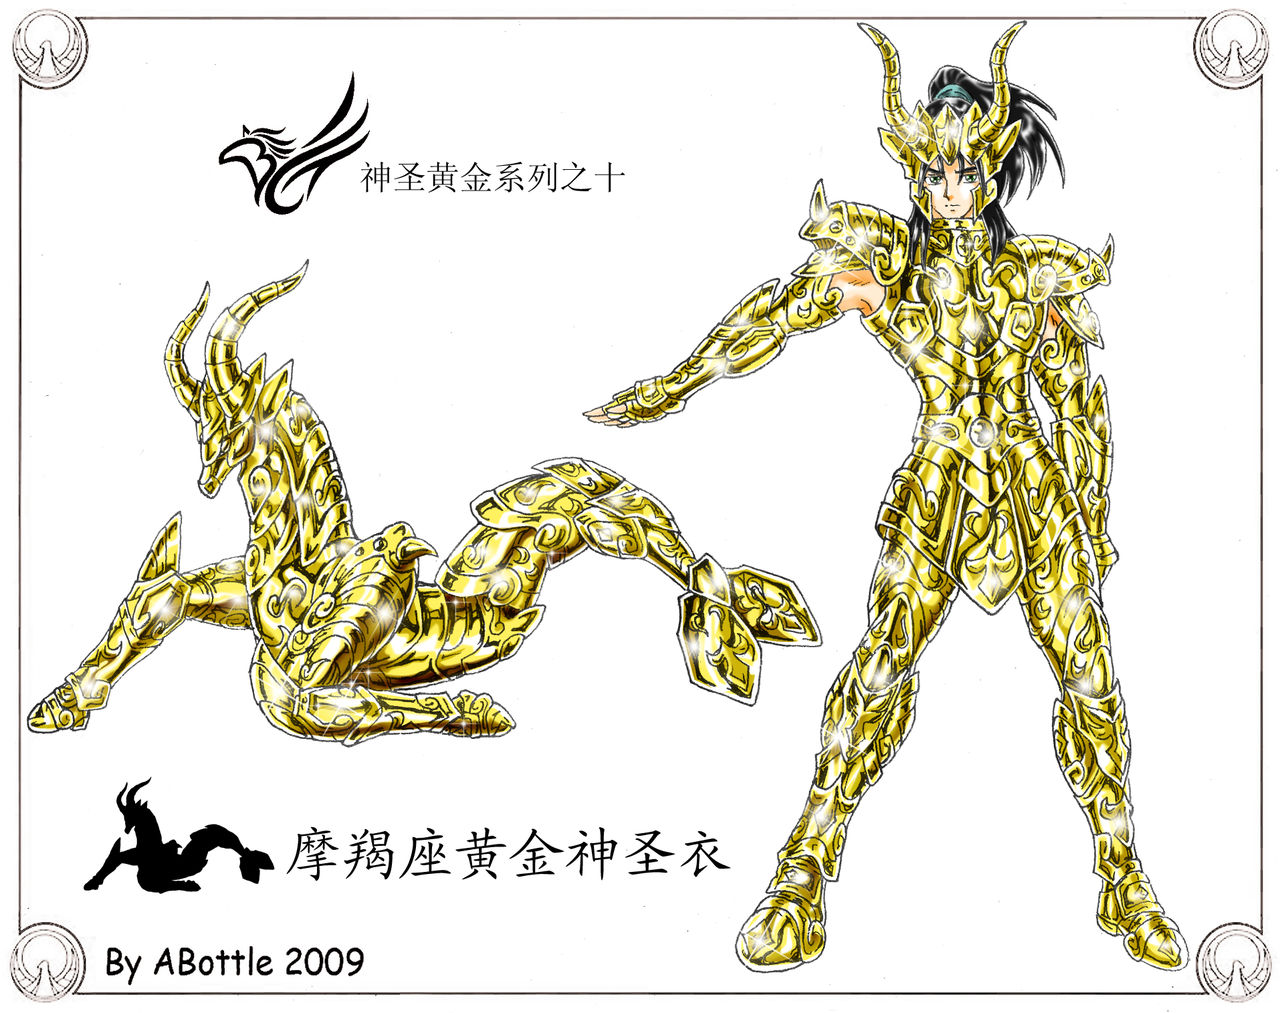 圣斗士:中国画家原创,最全的黄金神圣衣!